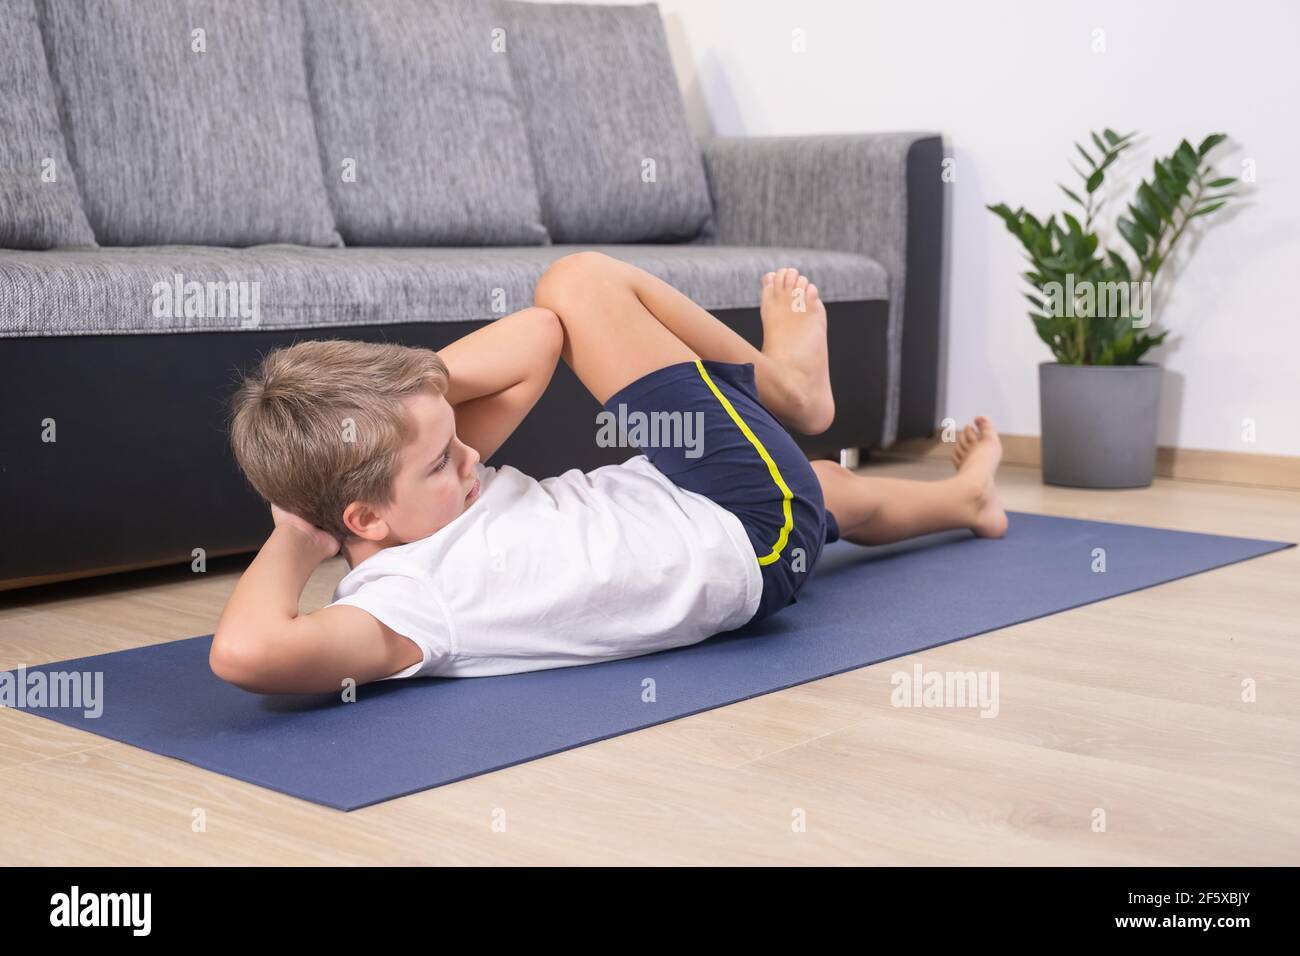 Un garçon blond entre pour le sport sur un tapis de yoga. Activité physique  de l'enfant à la maison. Sport sain style de vie loisirs actifs Photo Stock  - Alamy